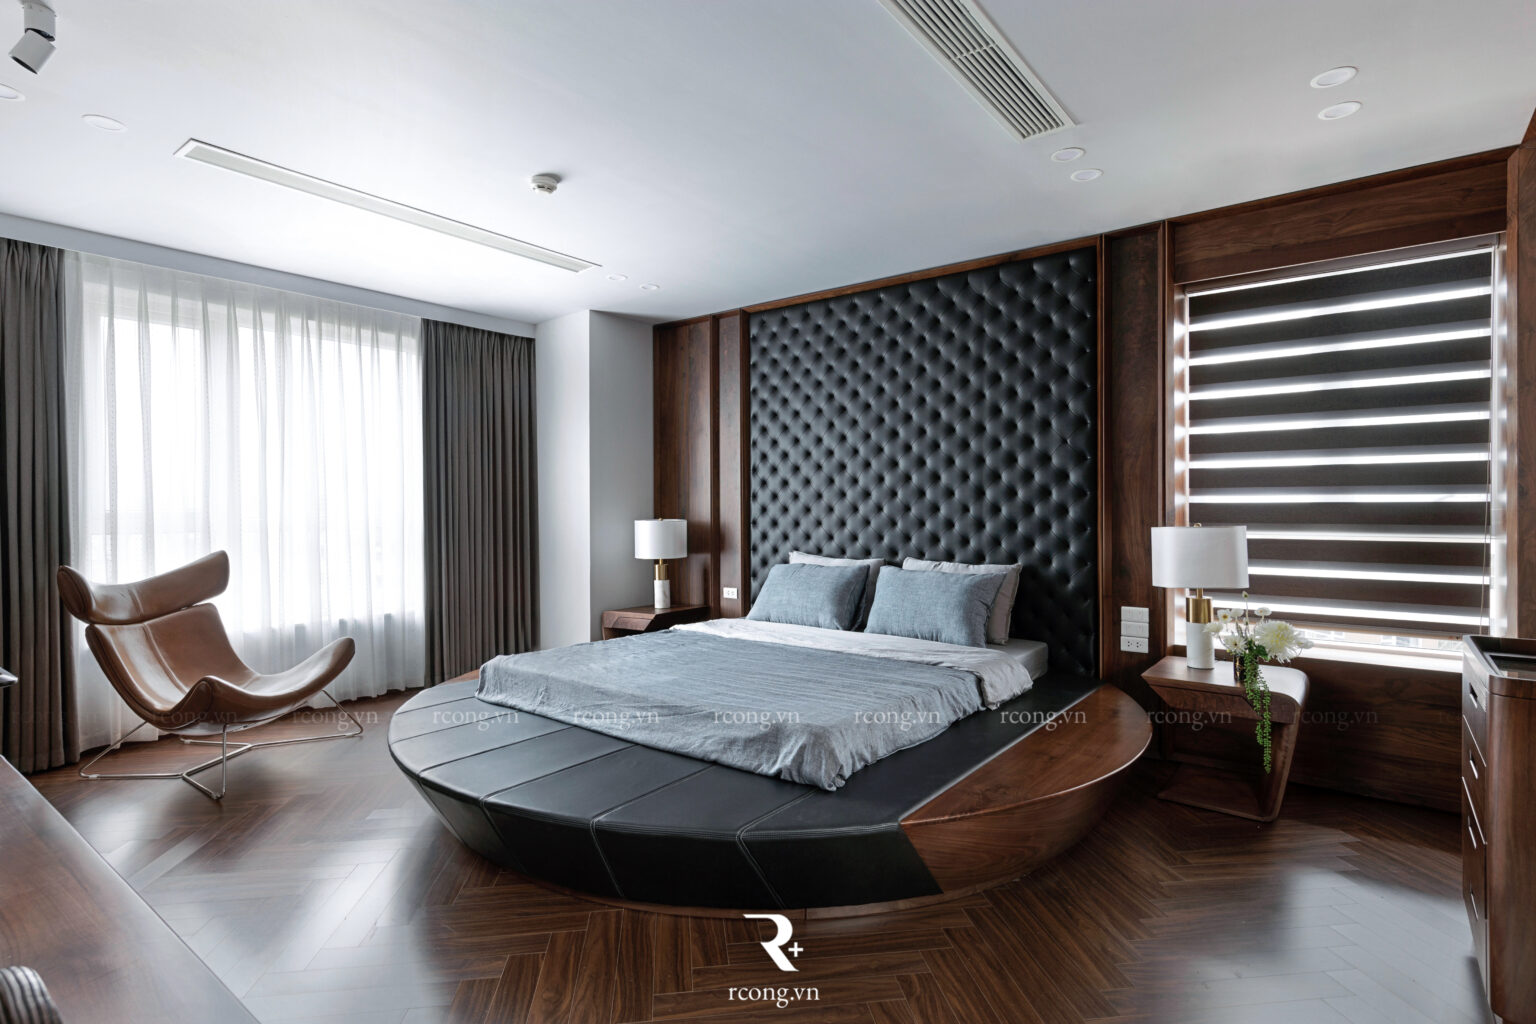 Không gian nghỉ ngơi lý tưởng với giường ngủ tròn ấm áp, kết hợp hai chiếc đèn ngủ đối xứng nhau